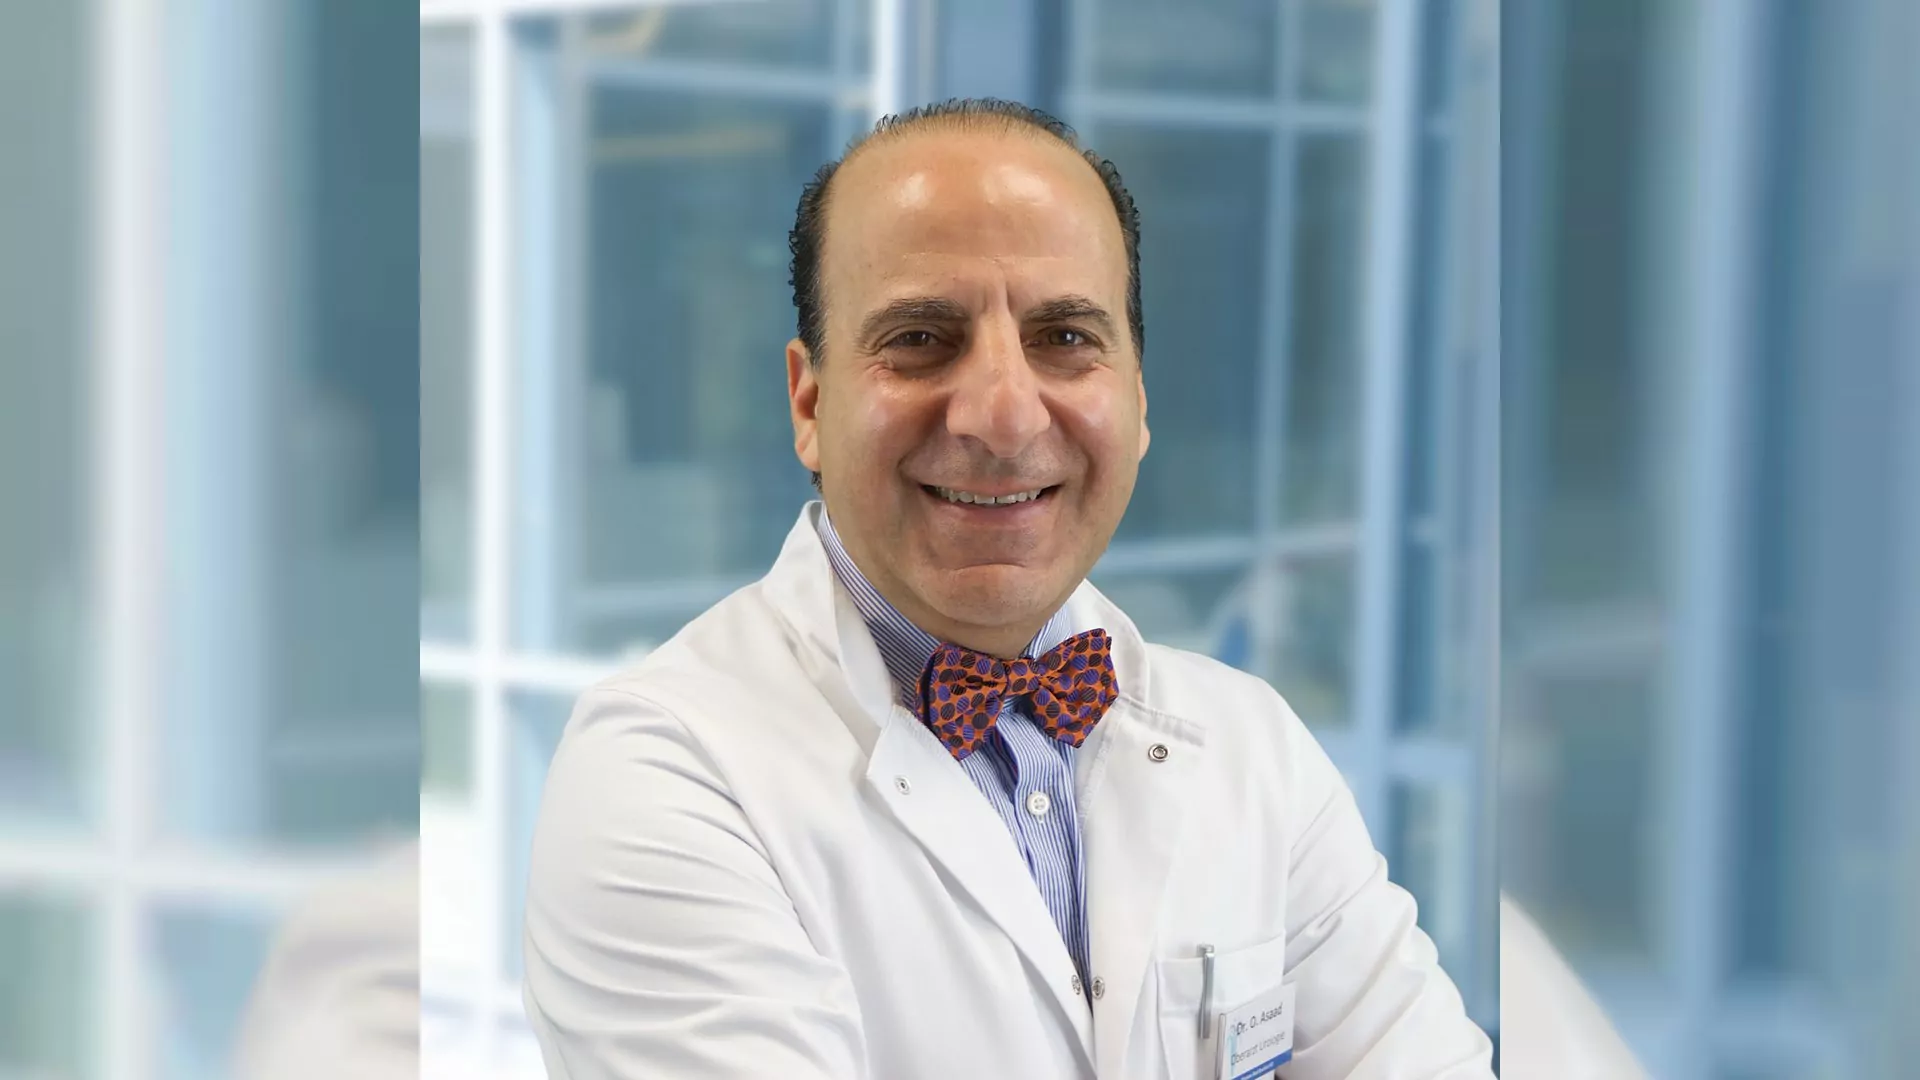 Dr. Asaad ist neuer Oberarzt in der Urologie